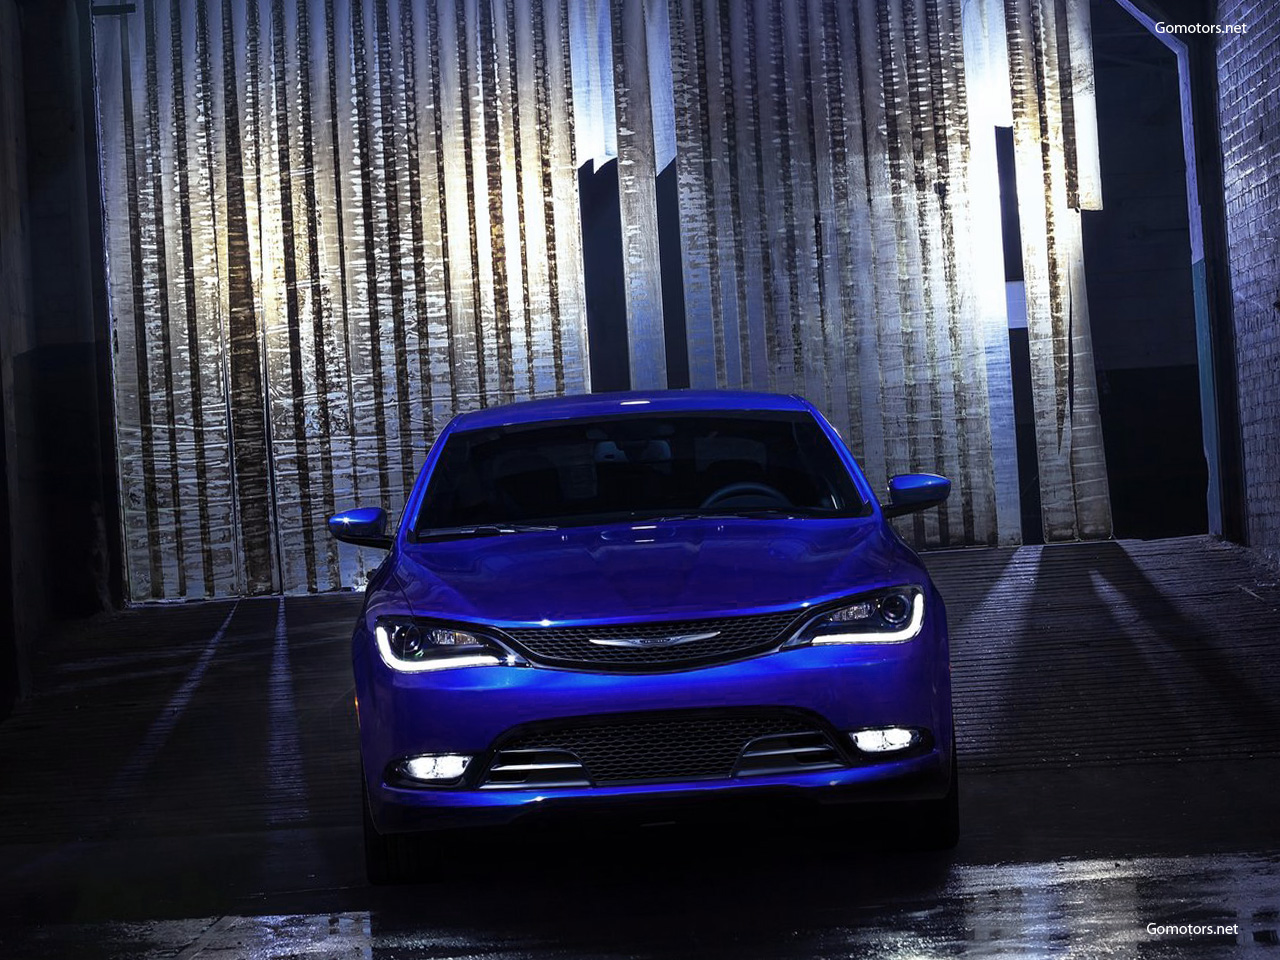 All-new 2015 Chrysler 200